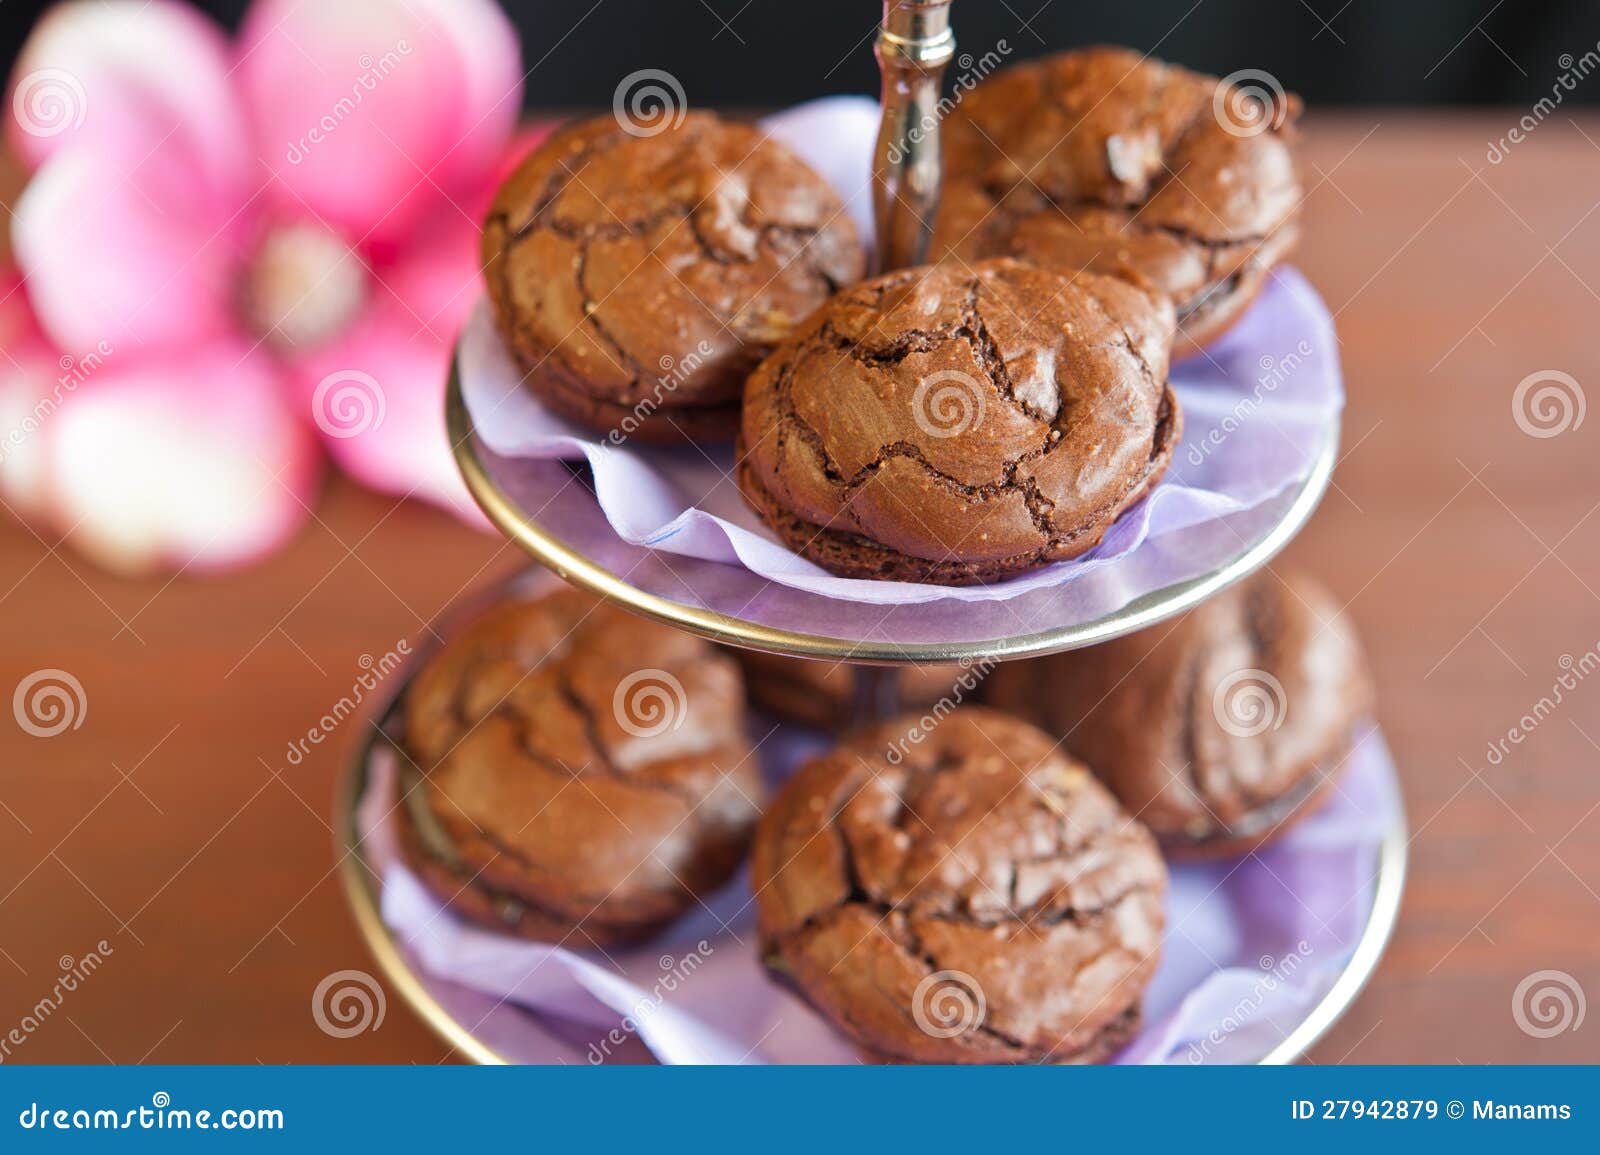 Schokoladenmakronen Mit Einer Blume Stockbild - Bild von traditionell ...